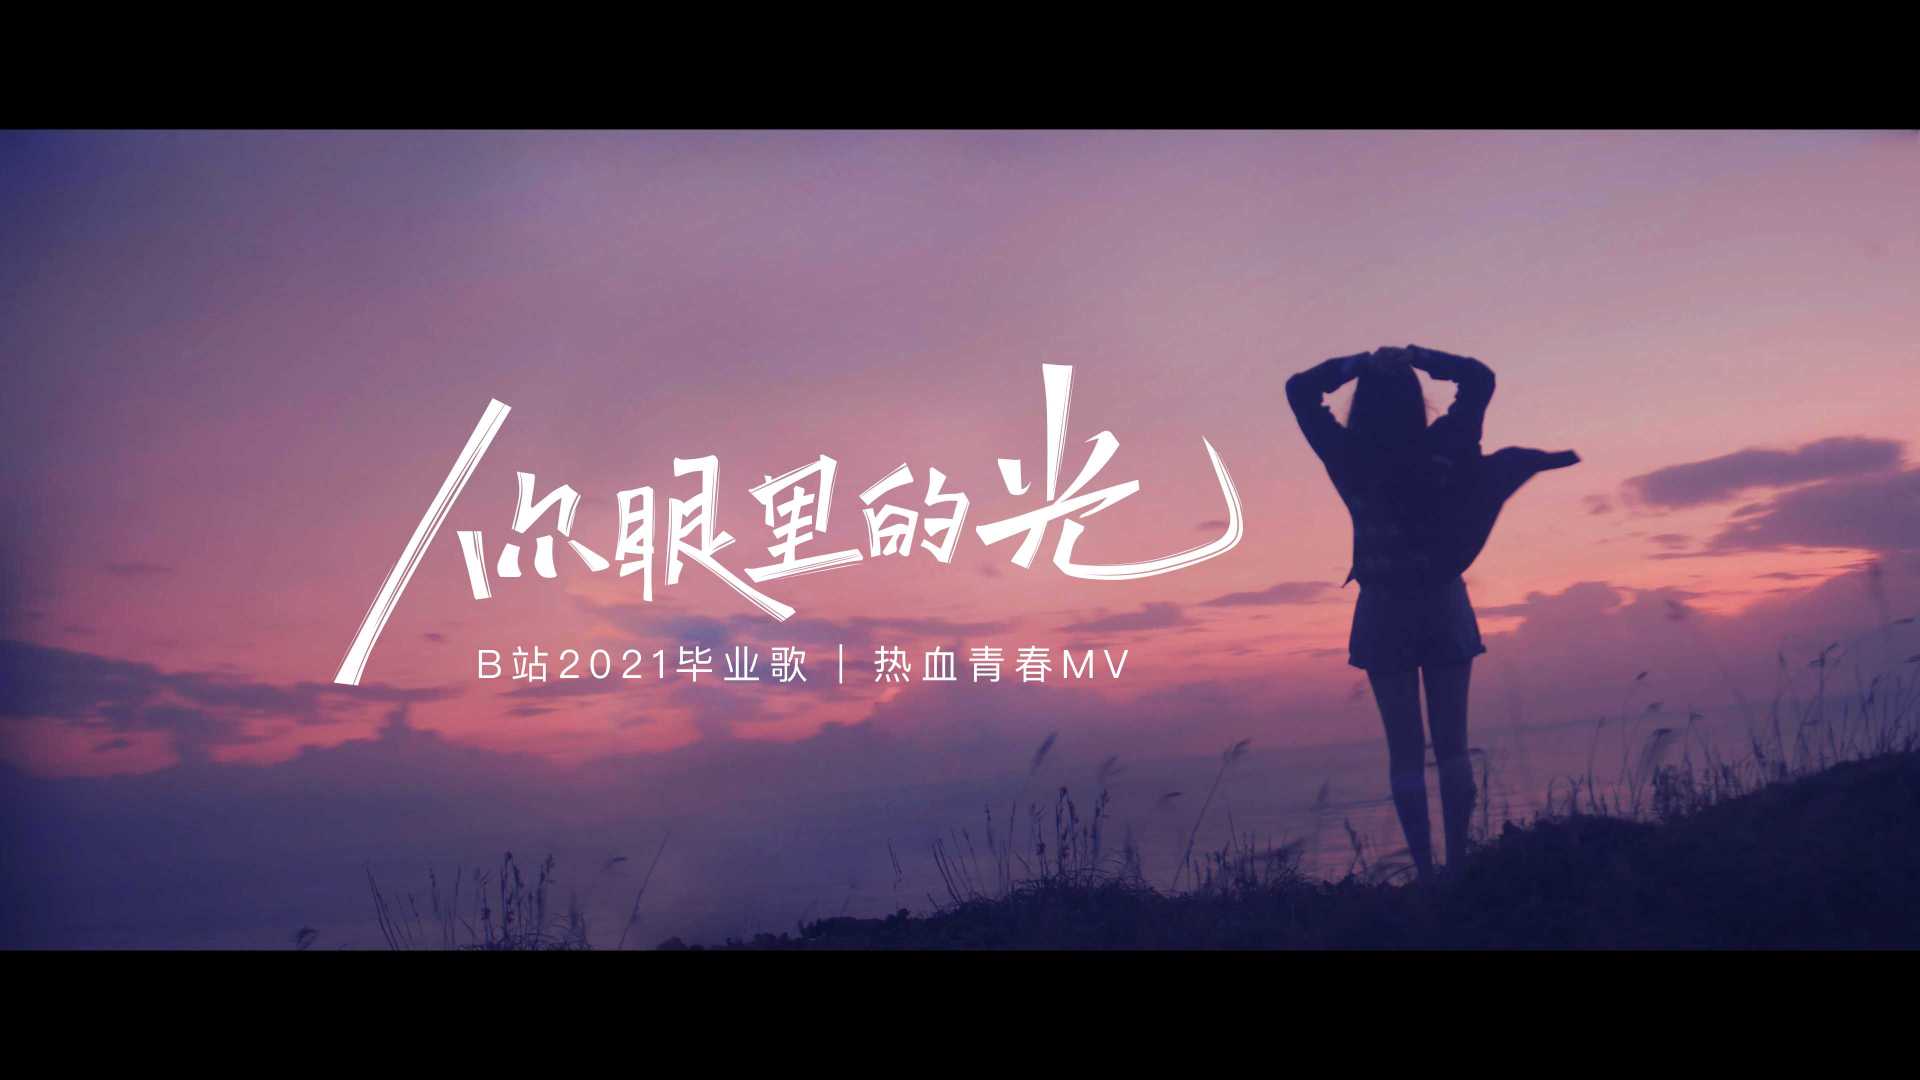 热血青春MV | B站2021毕业歌「你眼里的光」